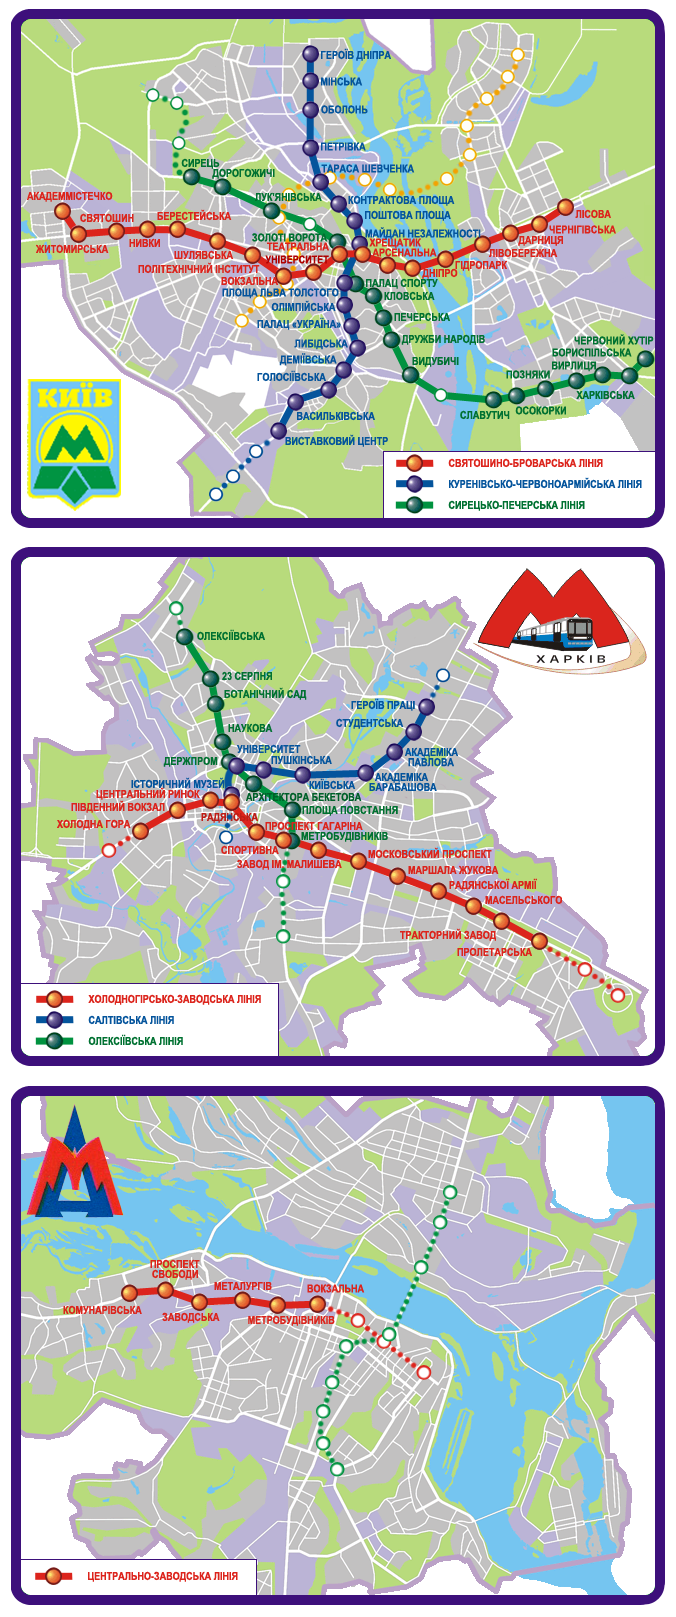 Dniepr — Maps; Charków — Metro — Maps; Kijów — Metro — Maps